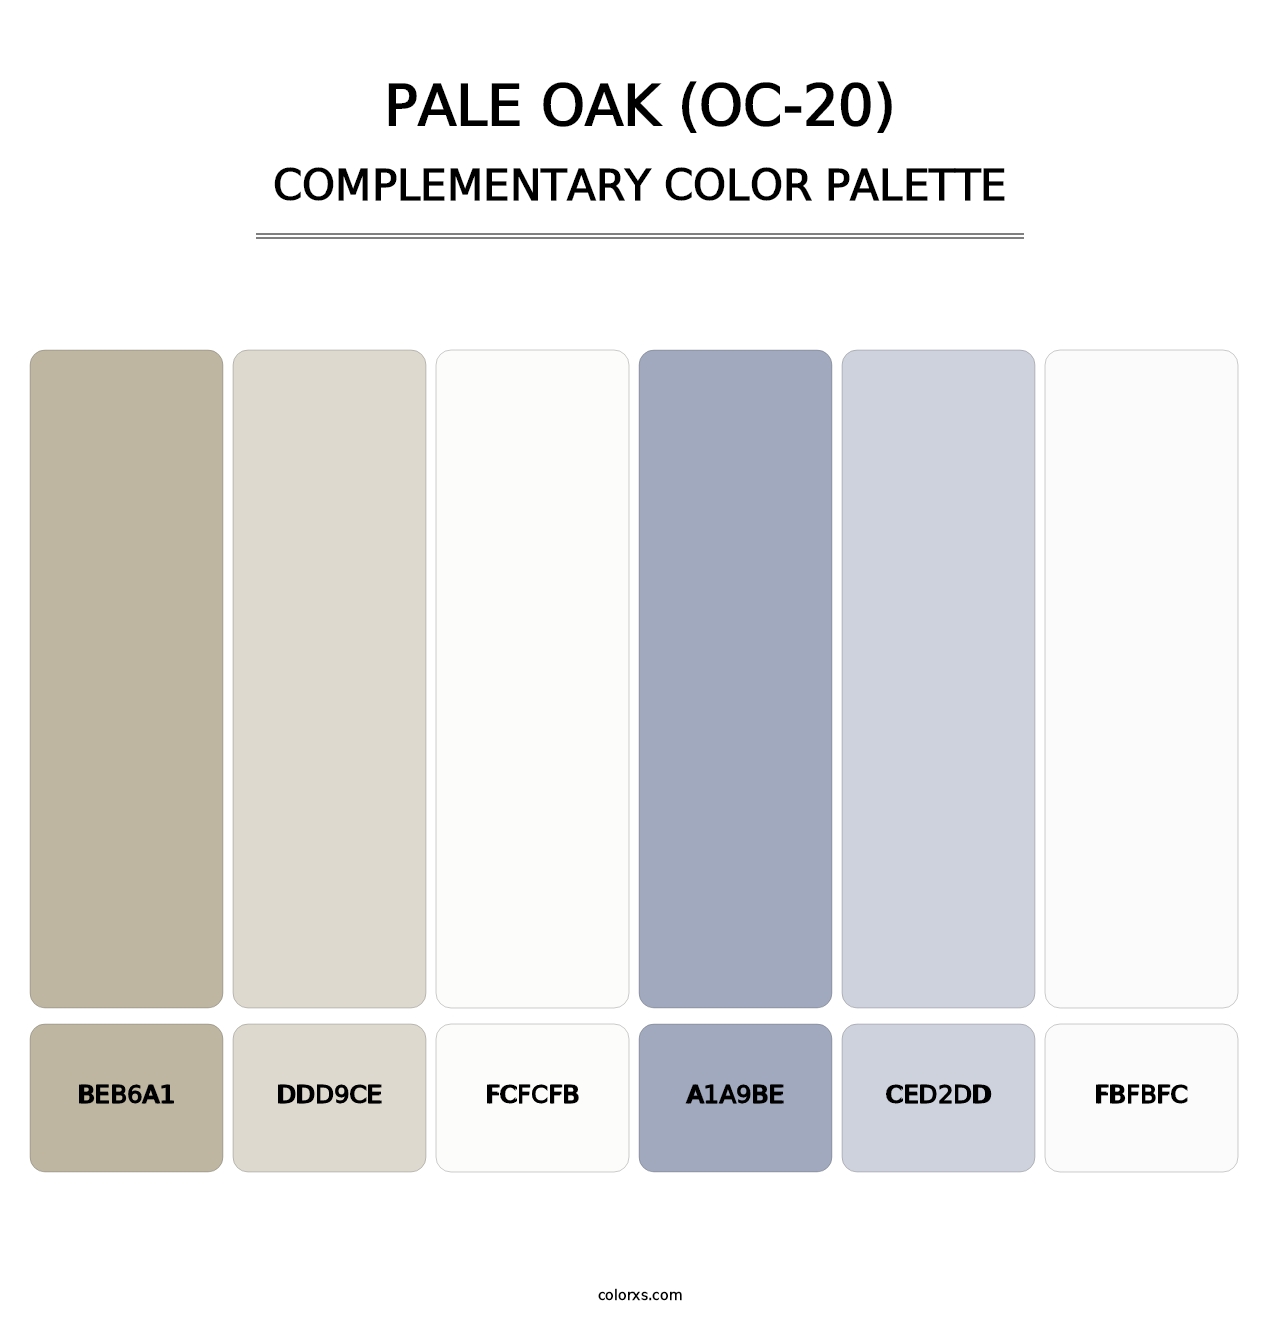 Pale Oak (OC-20) - Complementary Color Palette